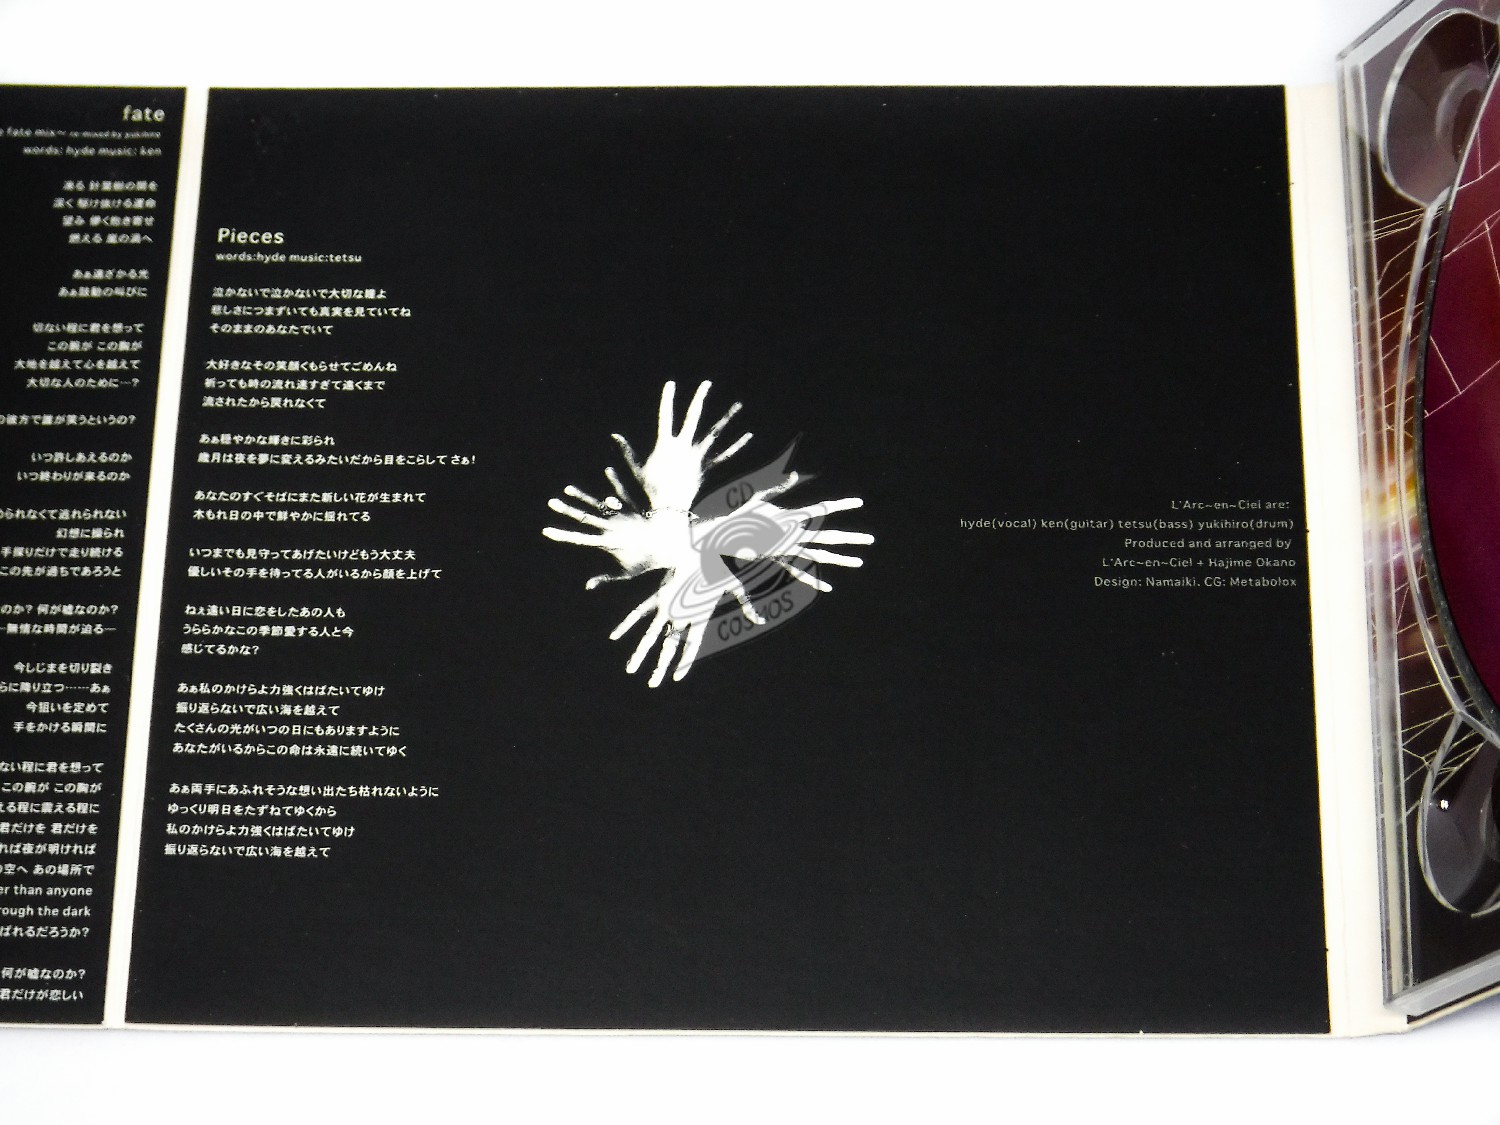 L'Arc~en~Ciel - Pieces - cdcosmos